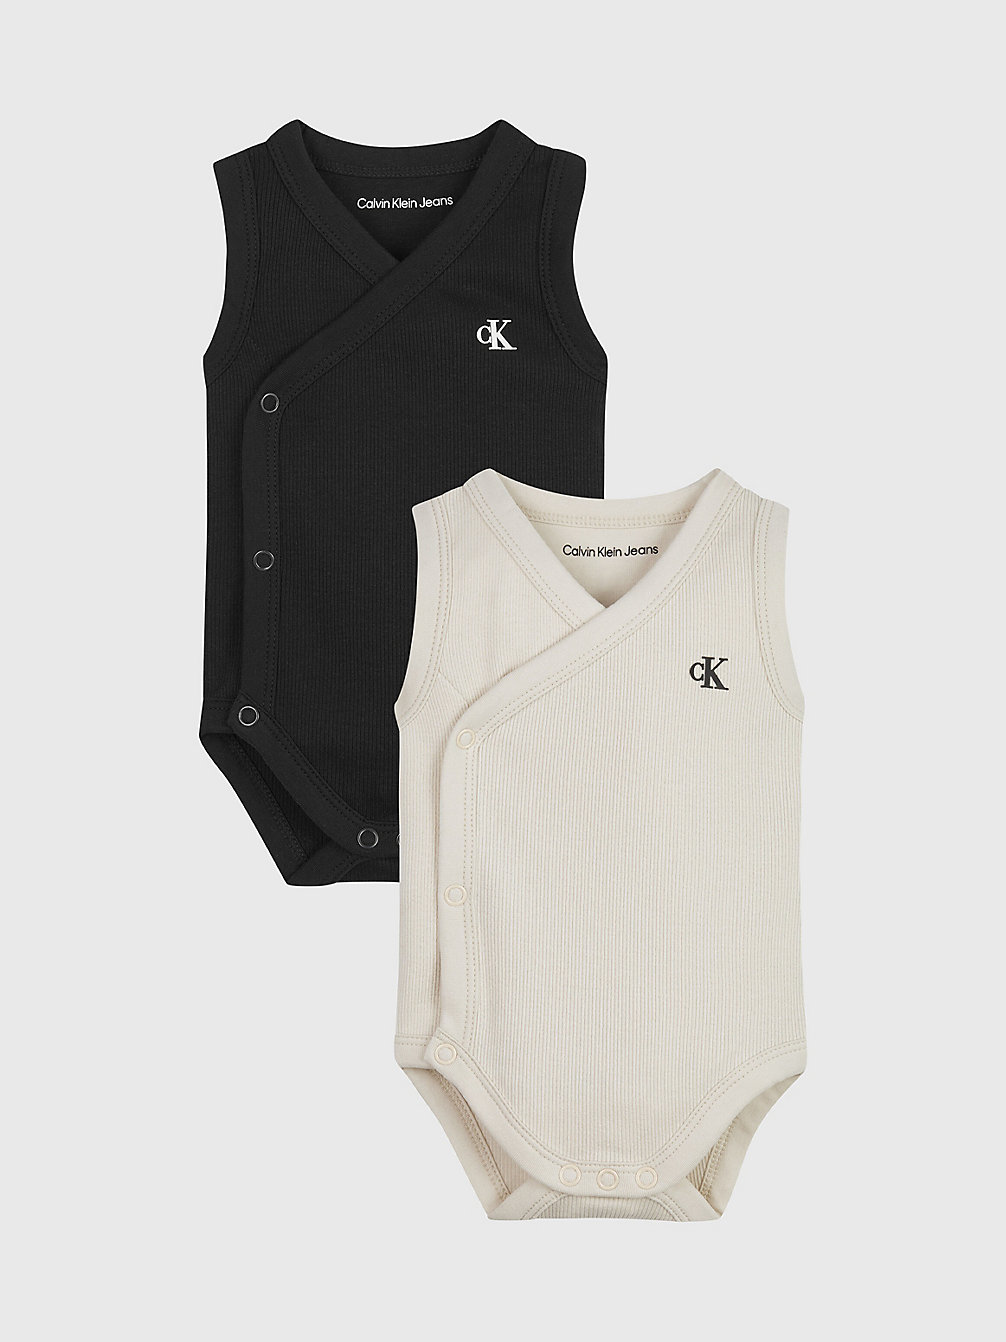 WHITE CAP GRAY / BLACK 2er-Pack Mit Ärmellosen Baby-Bodys undefined newborn Calvin Klein